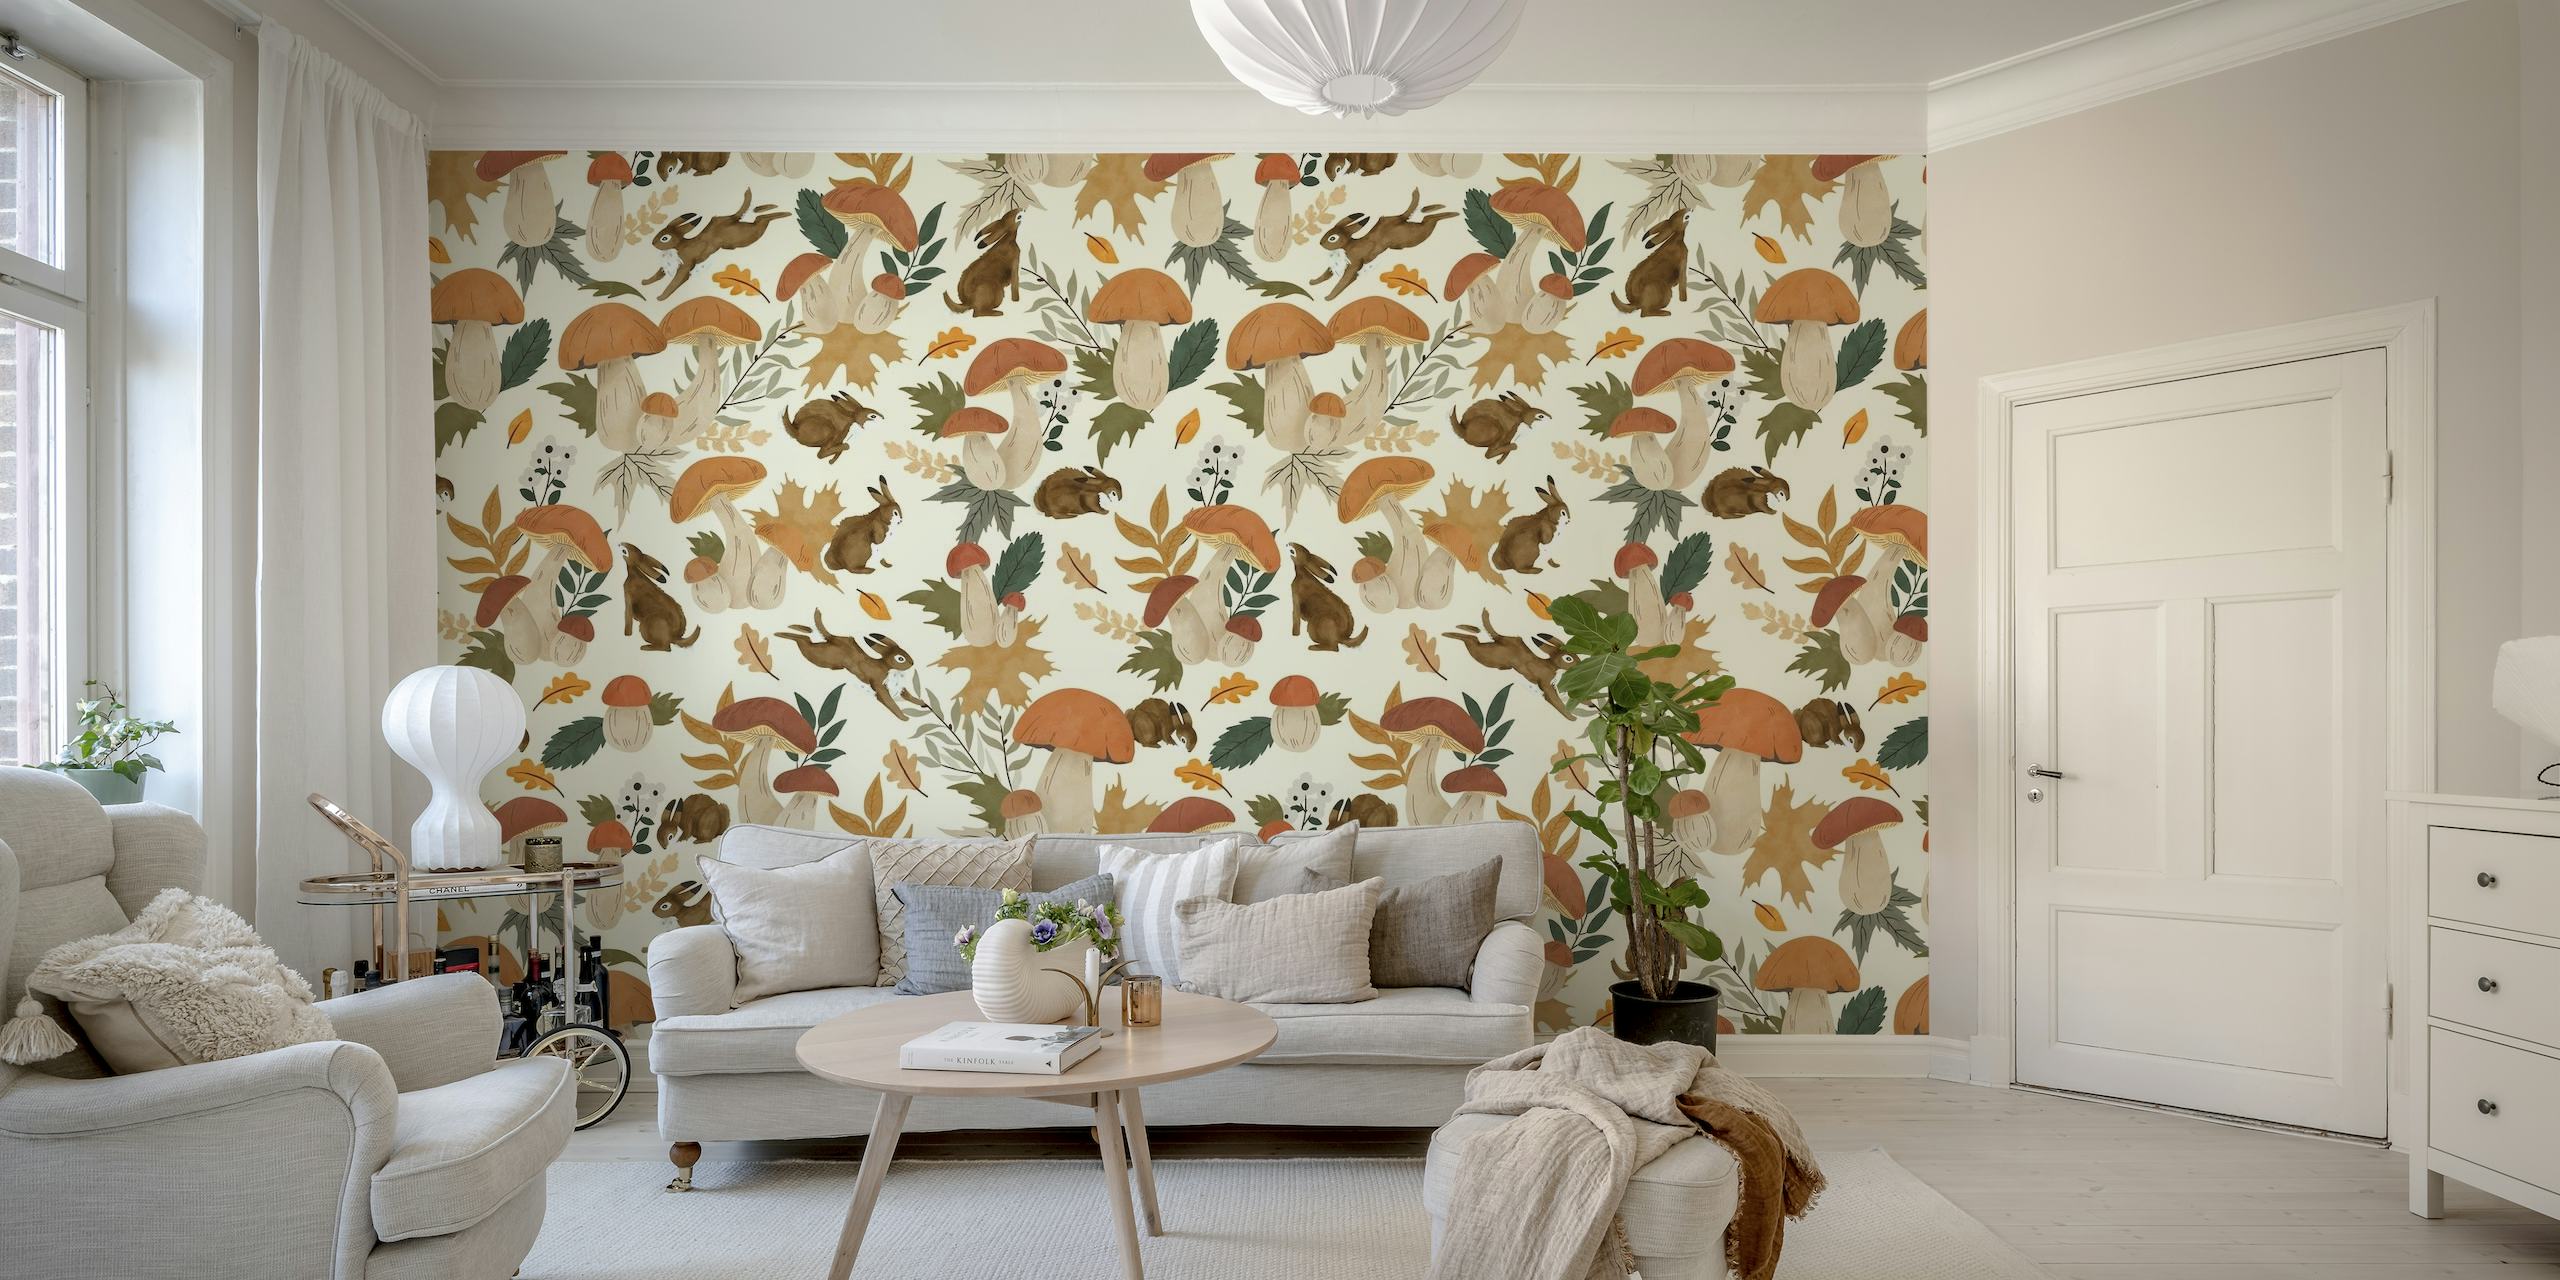 Rabbits and mushrooms wallpaper